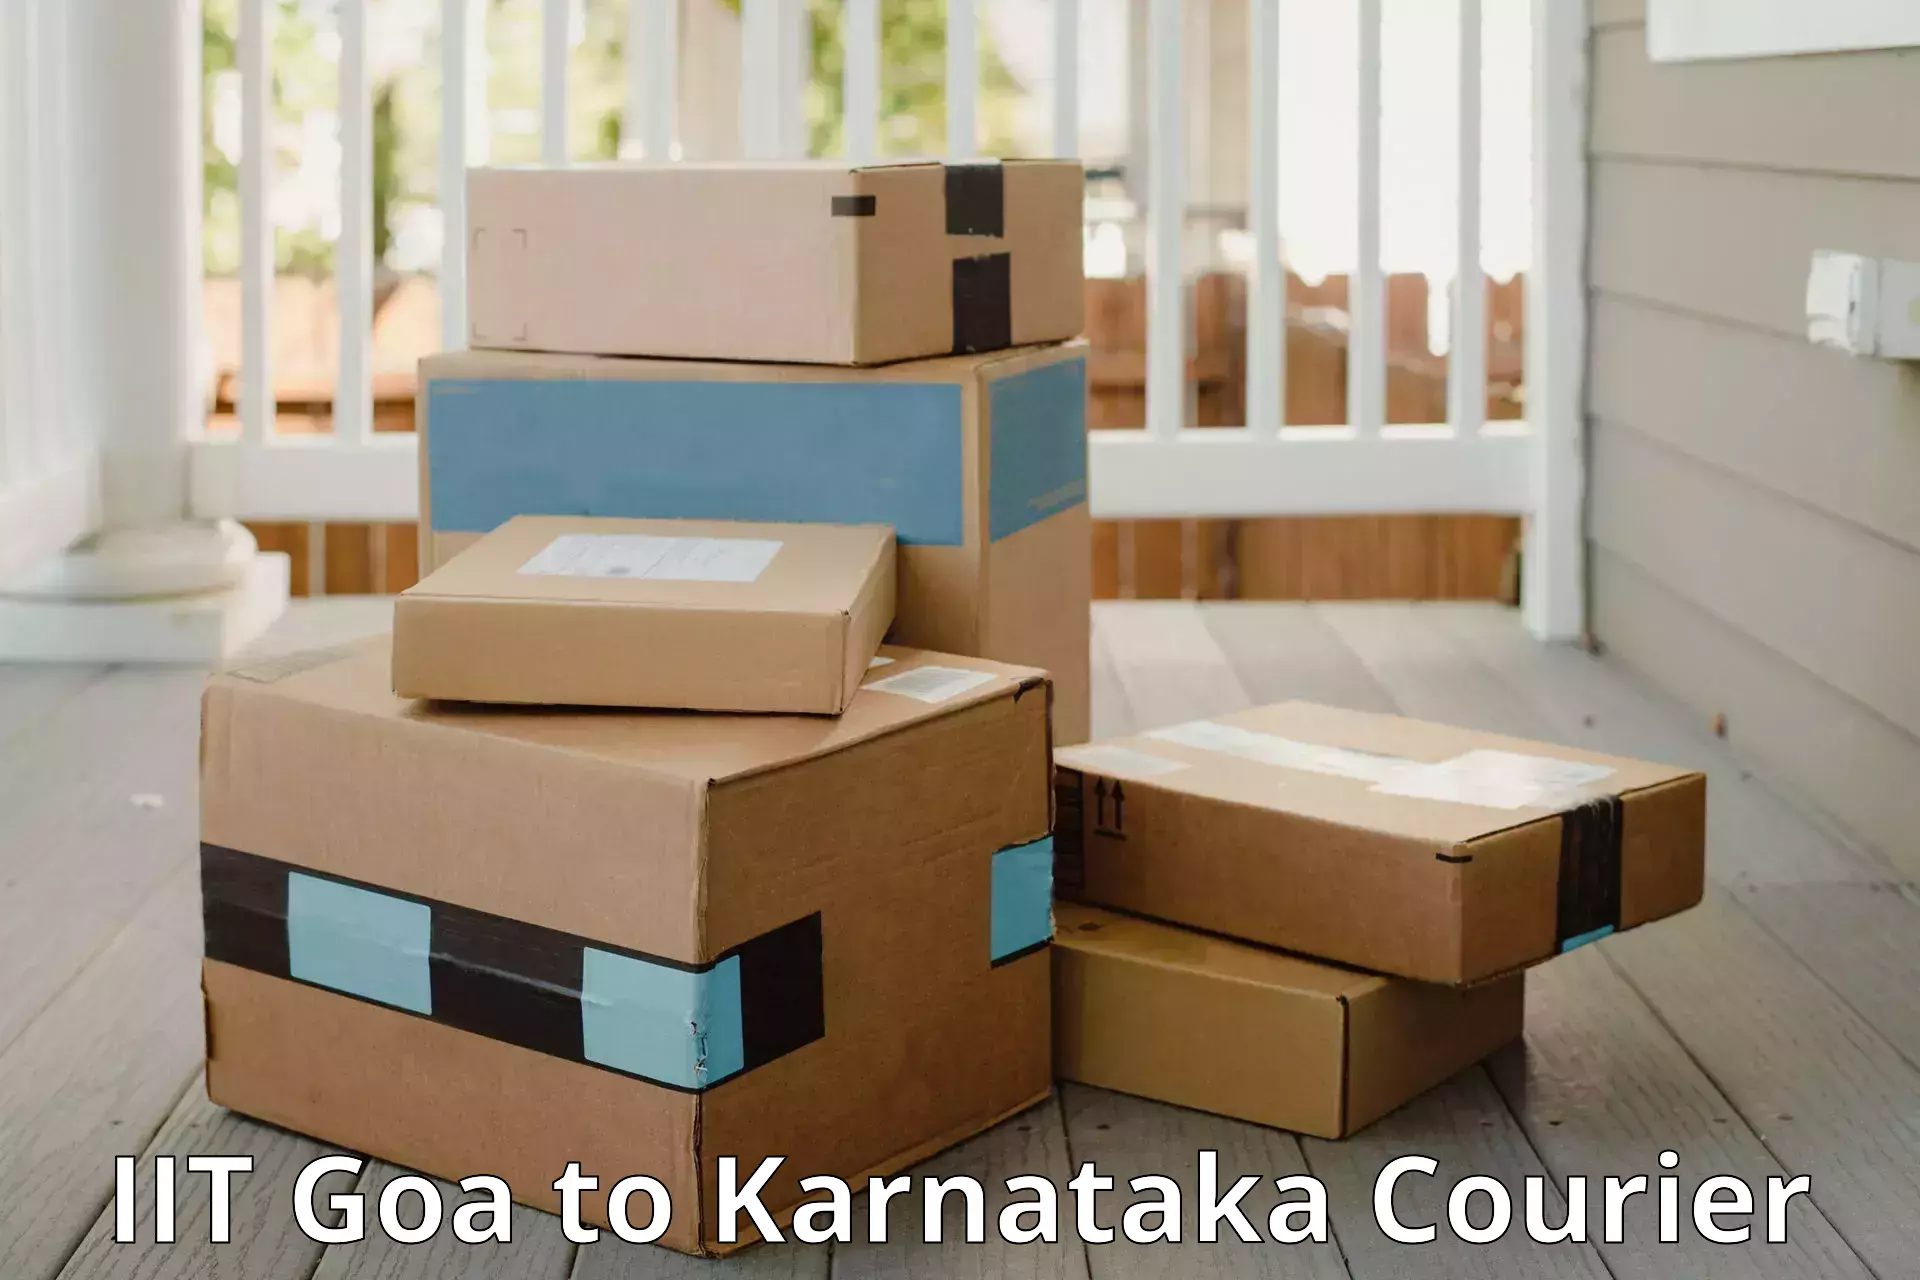 Luggage shipment tracking IIT Goa to Hubli